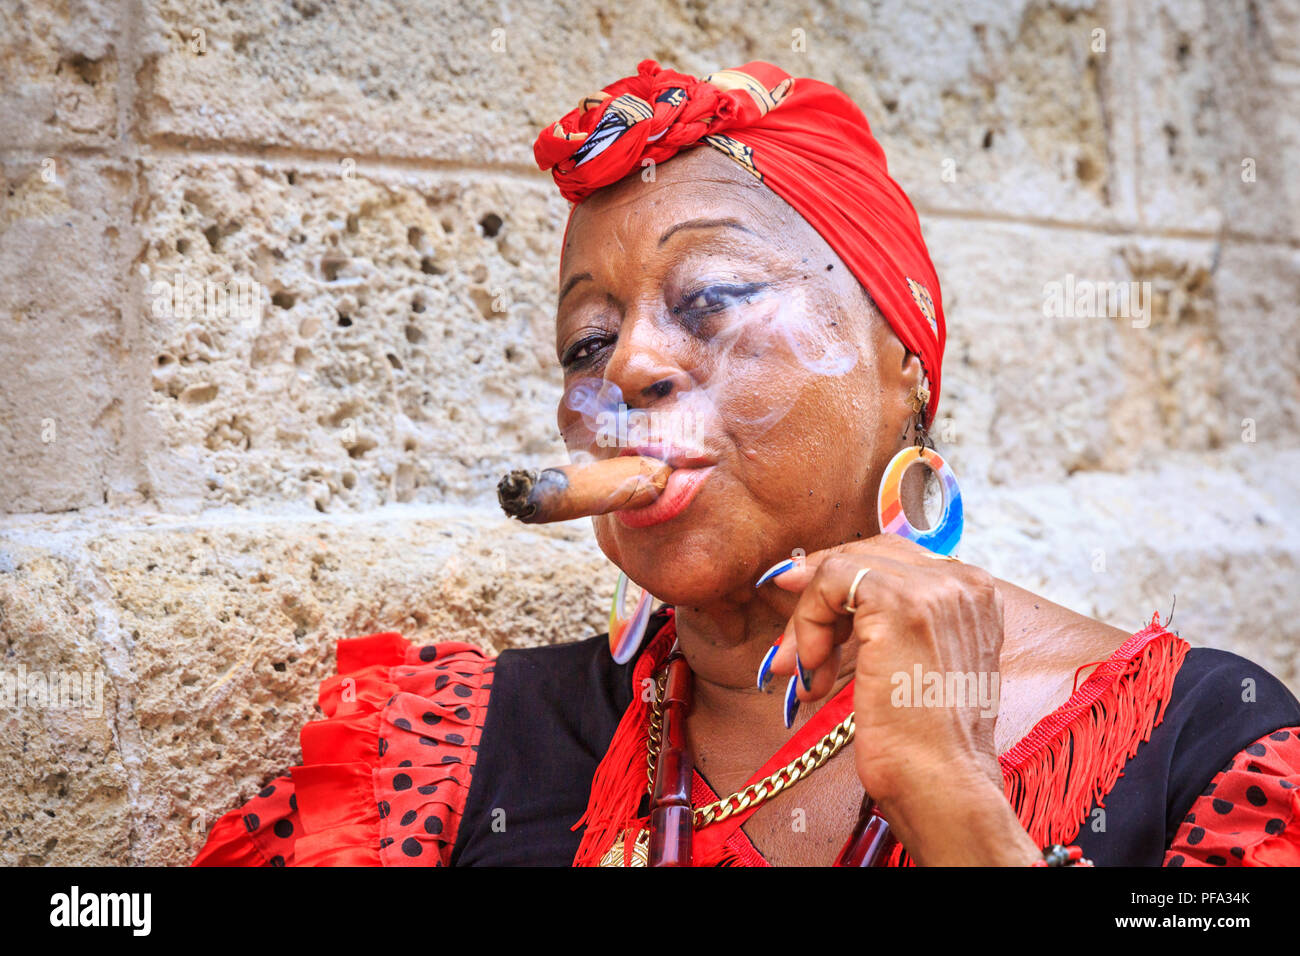 Donna cubana di fumare il sigaro in un colorato costume tradizionale, ritratto di sesso femminile a livello locale in posa di Havana, Cuba Foto Stock